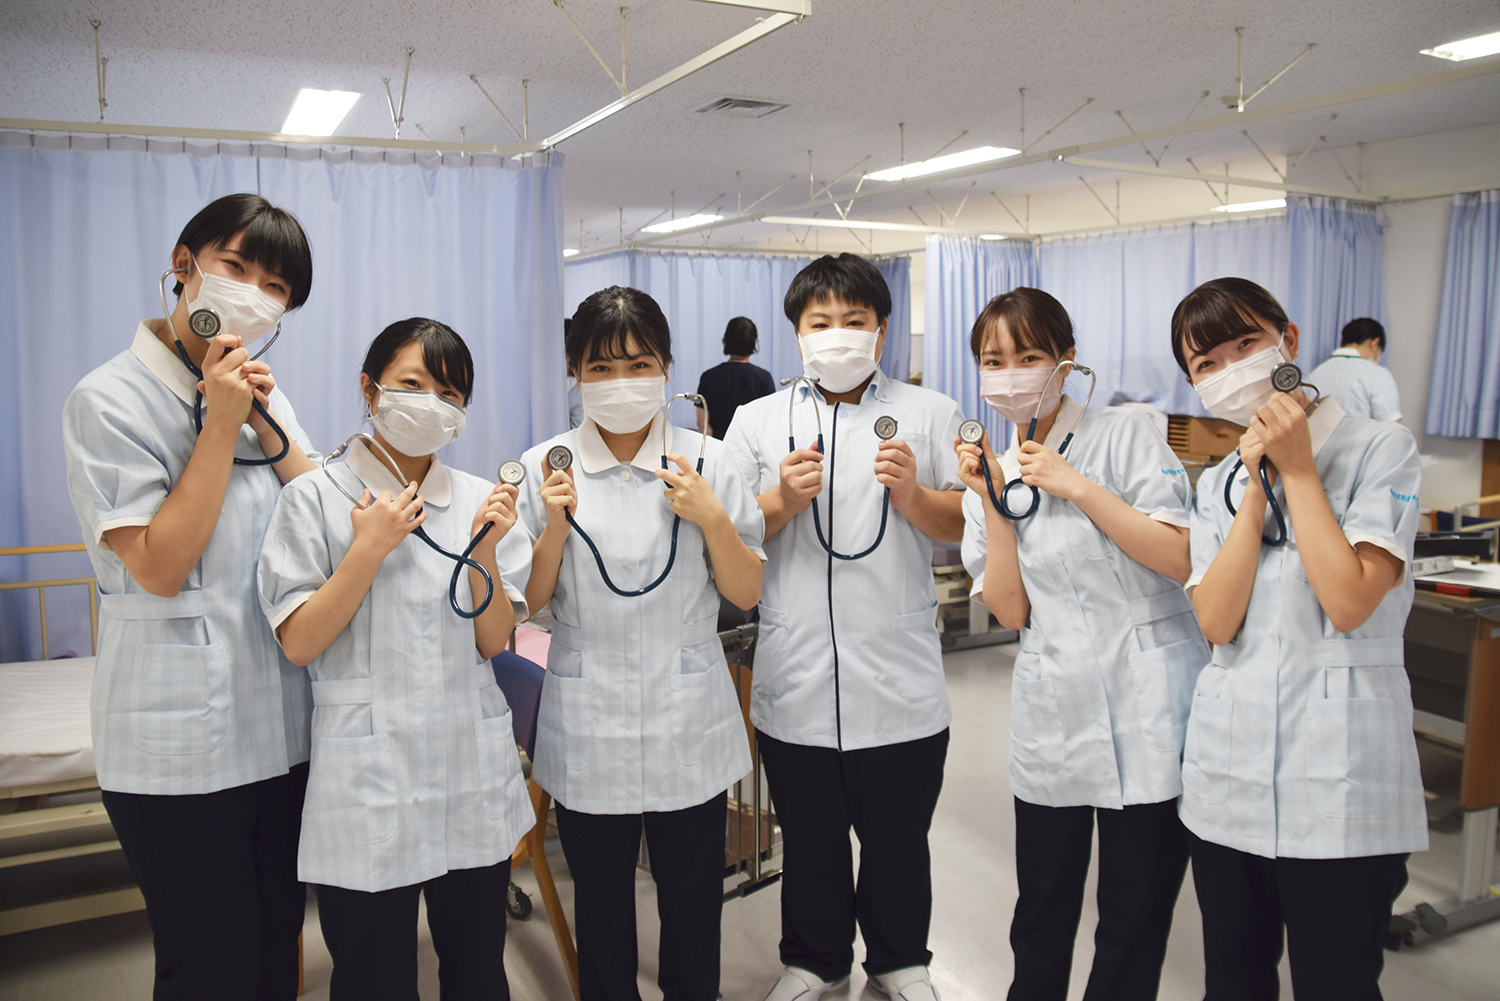 岩崎学園 横浜実践看護専門学校 公式 聴診器は首に掛けて持ち運ぶイメージがありますが 実は衛生面と安全面からあまり良くないそう ご存知でしたか 本校の演習は 複数の教員も補助に入るのできめ細やかなフォローが可能 今後も学生が興味関心を